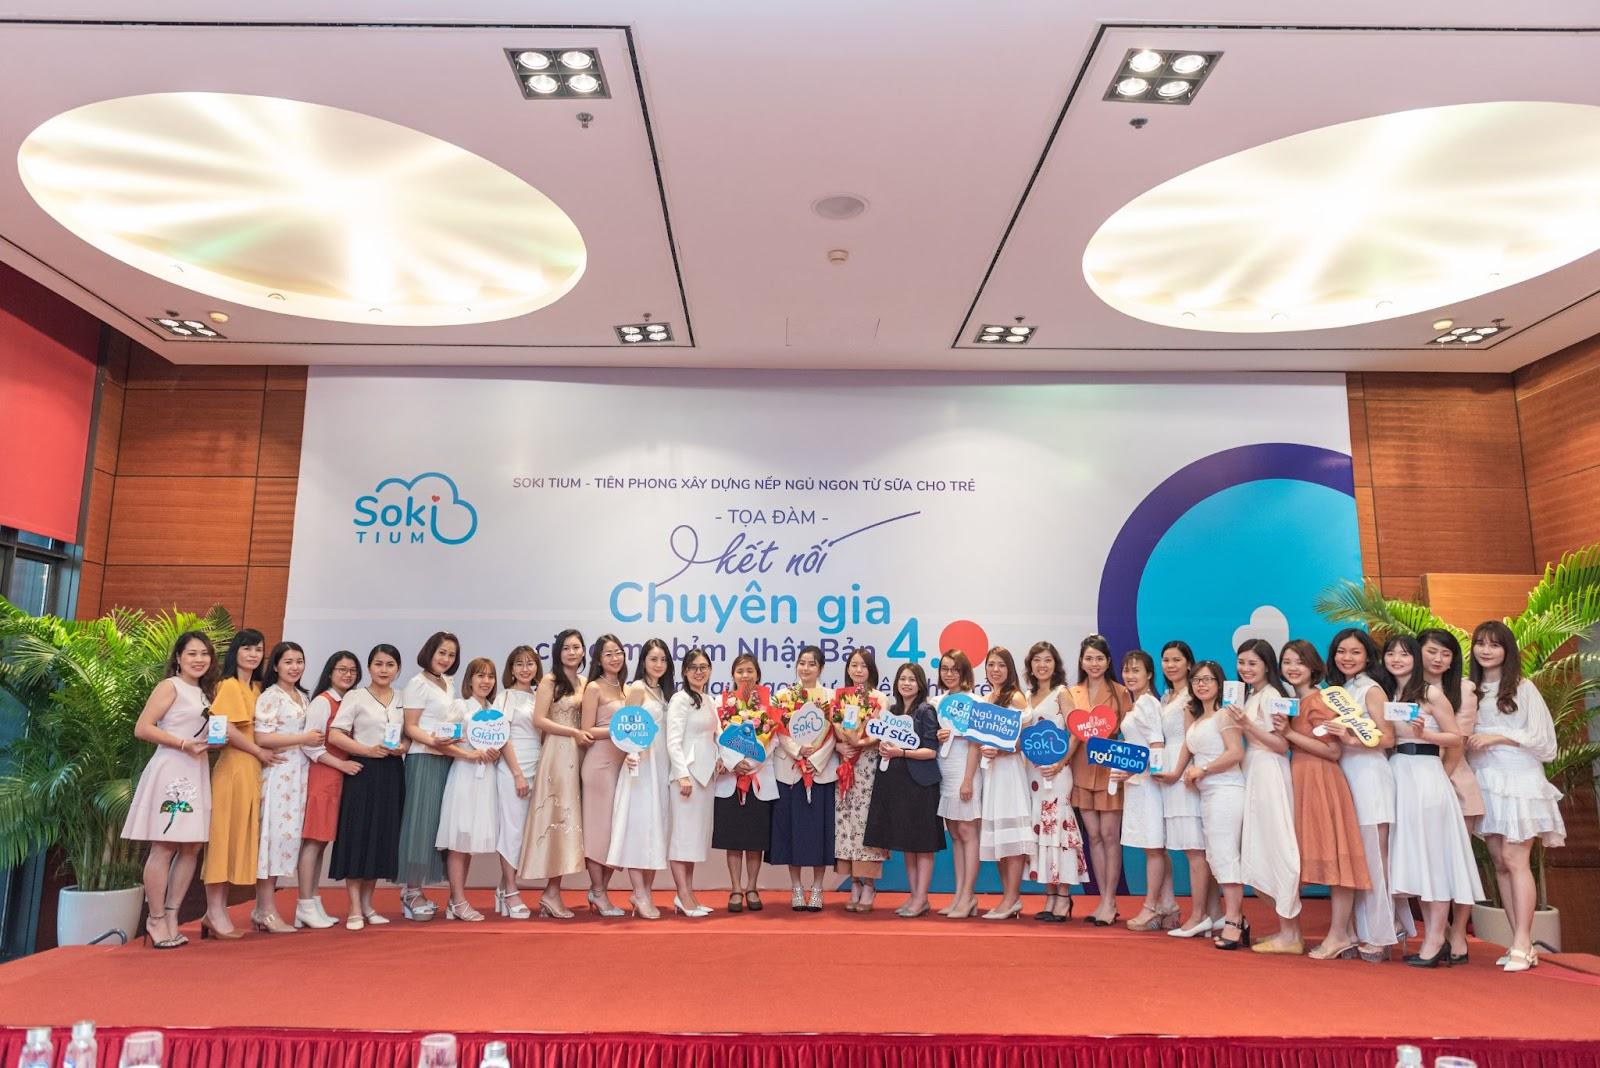 Sự kiện kết nối mẹ bỉm sữa Việt - Nhật từ Soki Tium: Hé lộ công thức xây dựng nếp ngủ ngon tự nhiên cho trẻ - Ảnh 1.